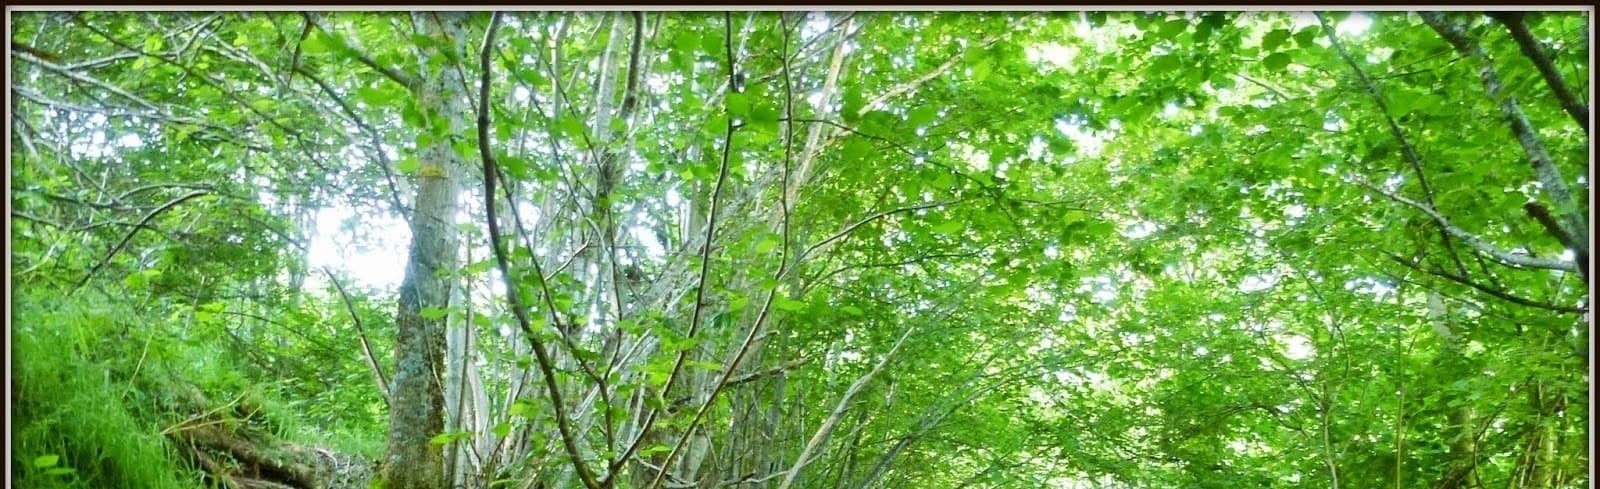 une forêt avec beaucoup d' arbres et de feuilles vertes